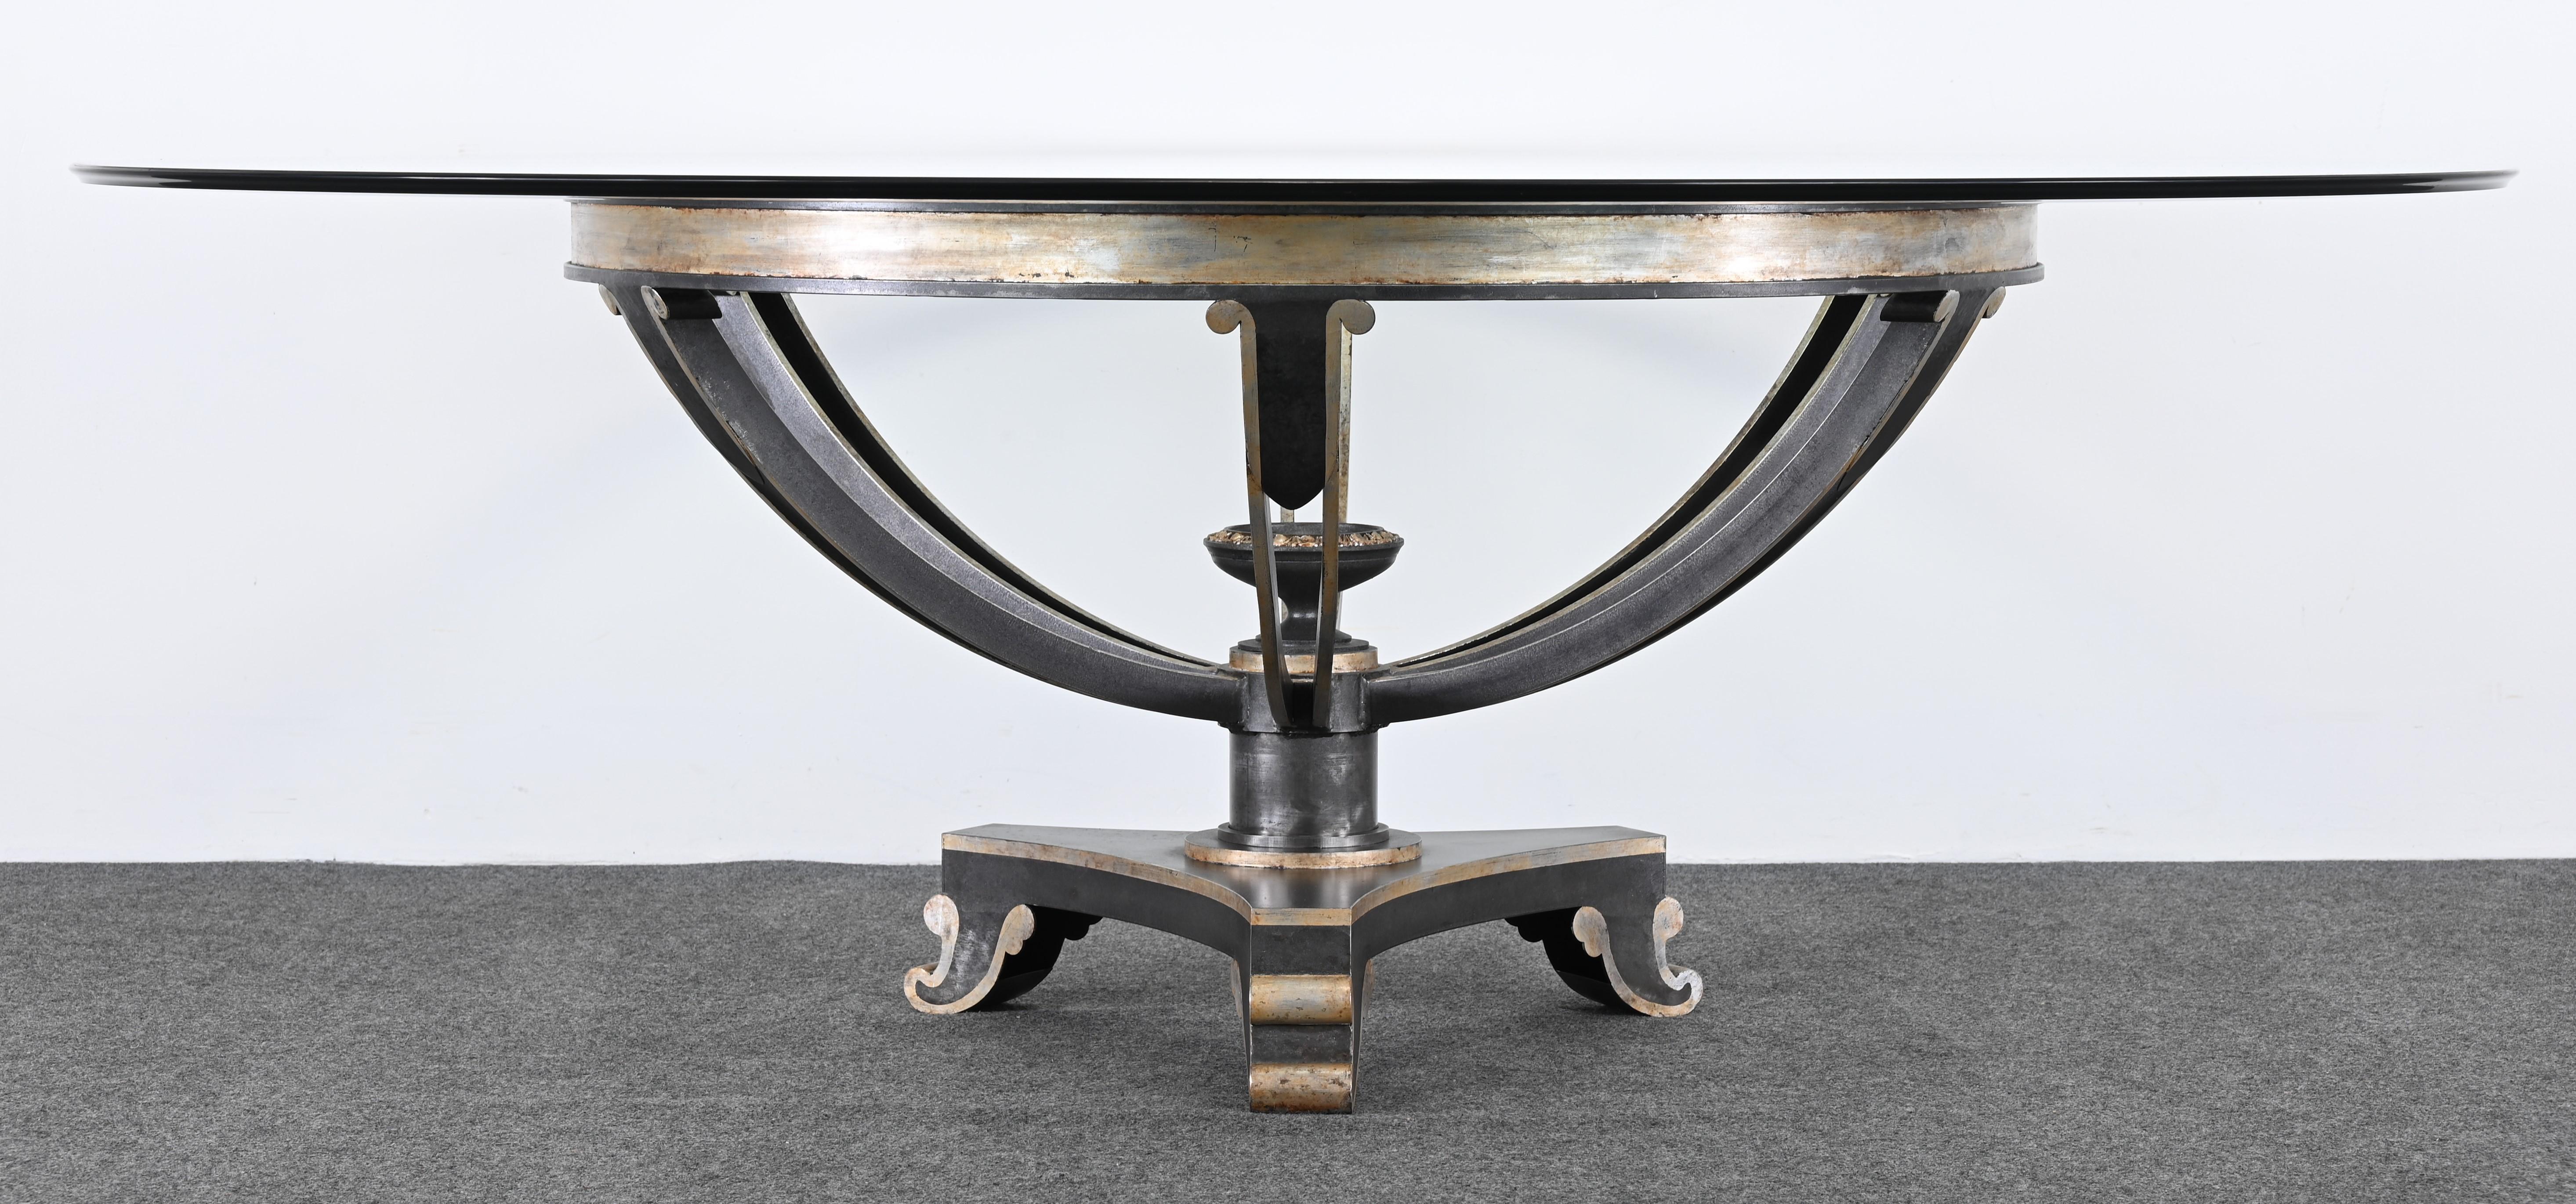 Une table centrale ou une table de salle à manger monumentale fabriquée par Niermann Weeks, réputé pour son savoir-faire unique et son design sur mesure. Cette magnifique table provient de la résidence d'un célèbre collectionneur d'art. La table est